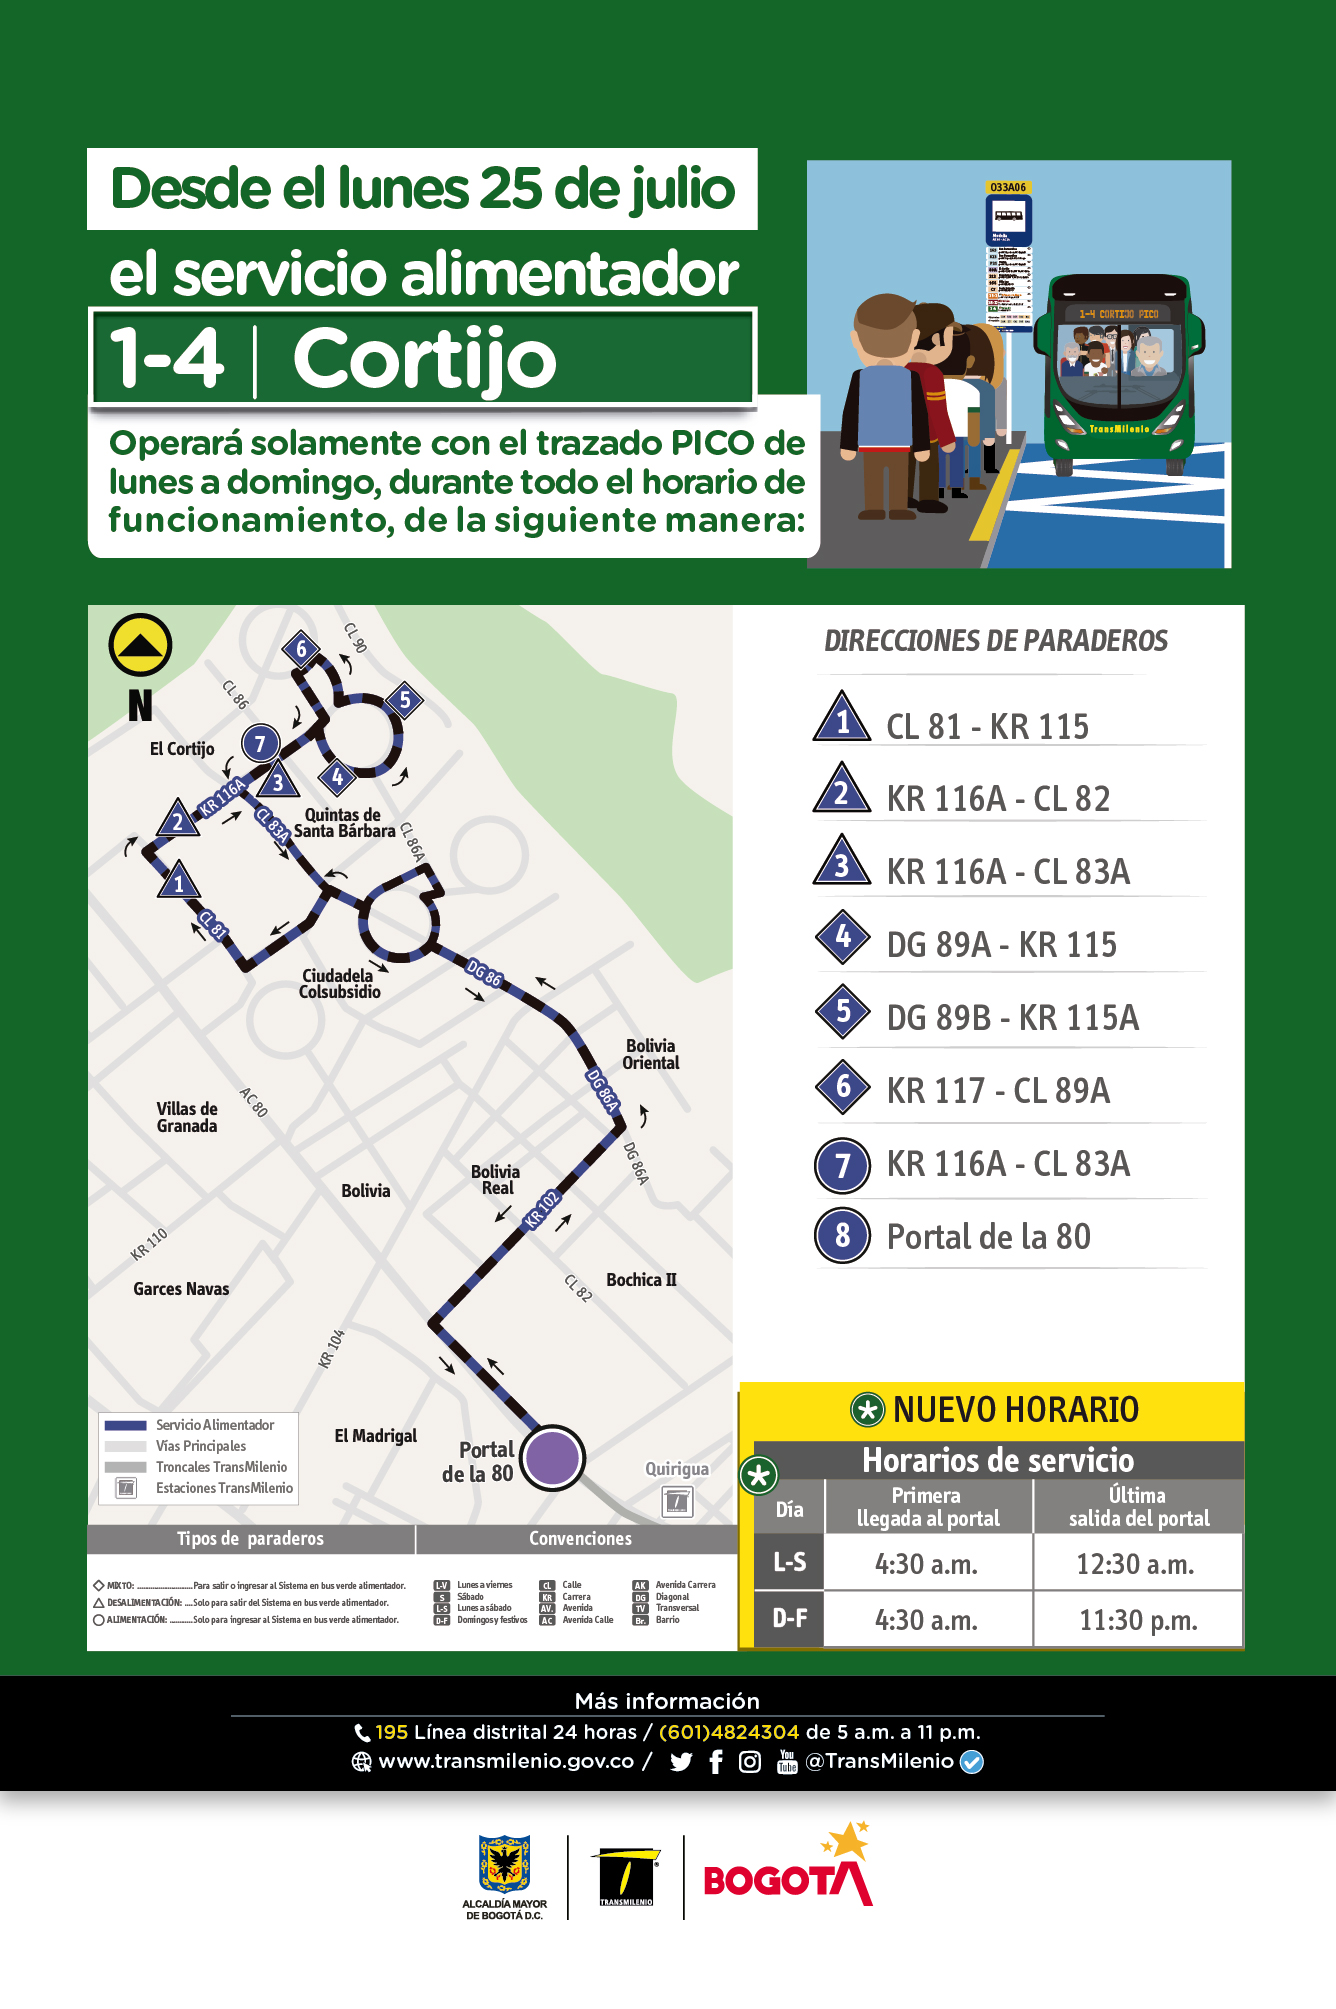 Nuevo horario de la ruta 1-4 Cortijo